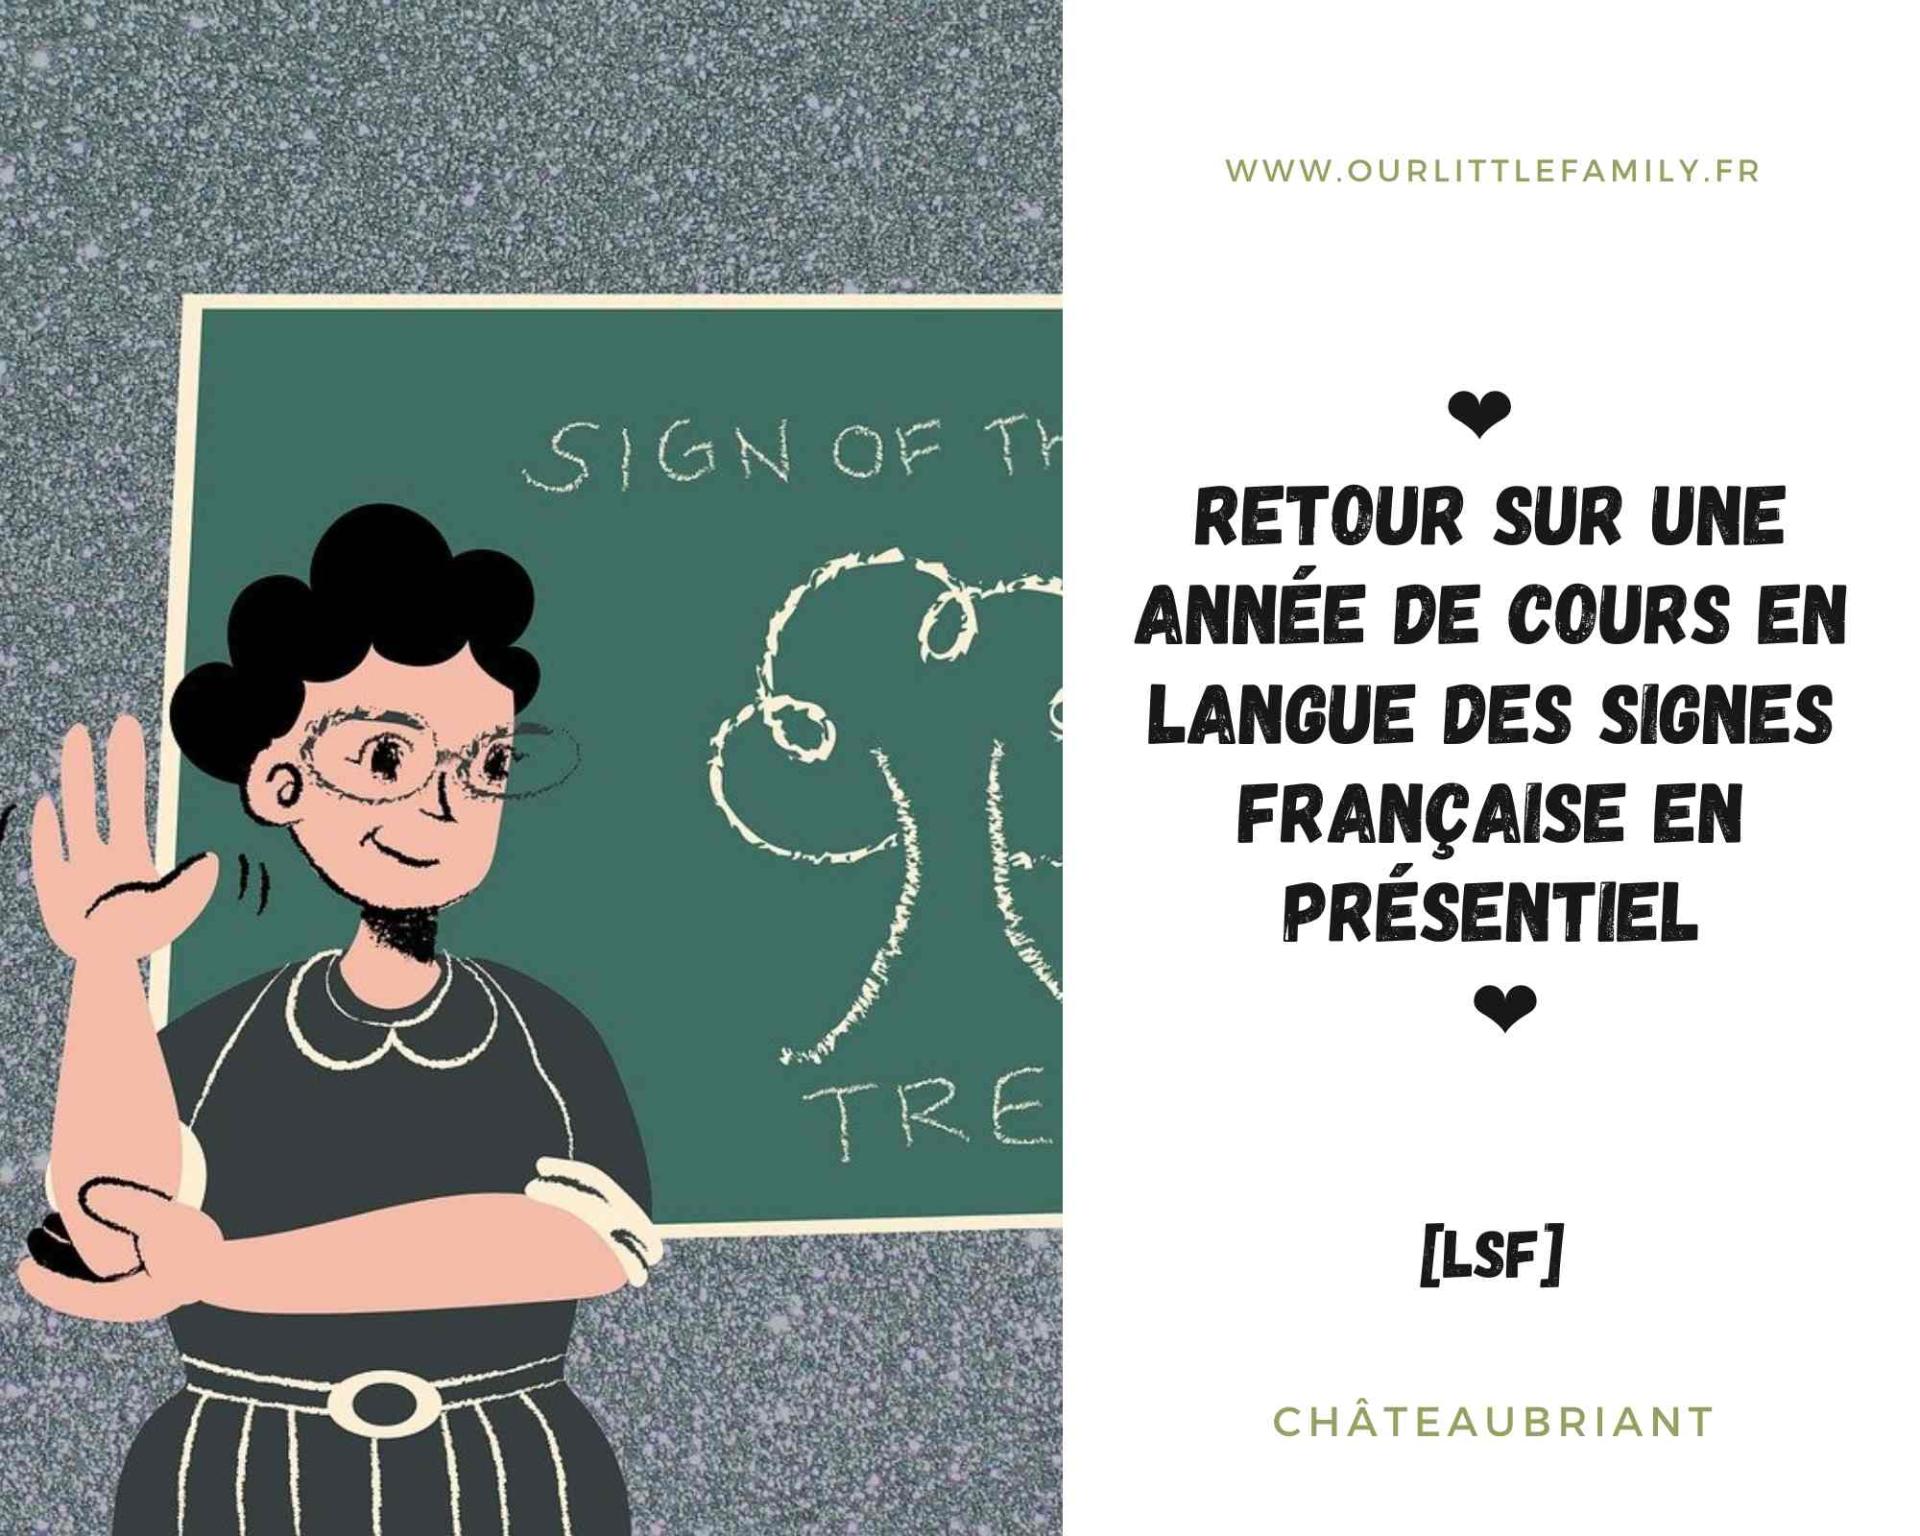 Retour sur une annee de cours en langue des signes francaise en presentiel